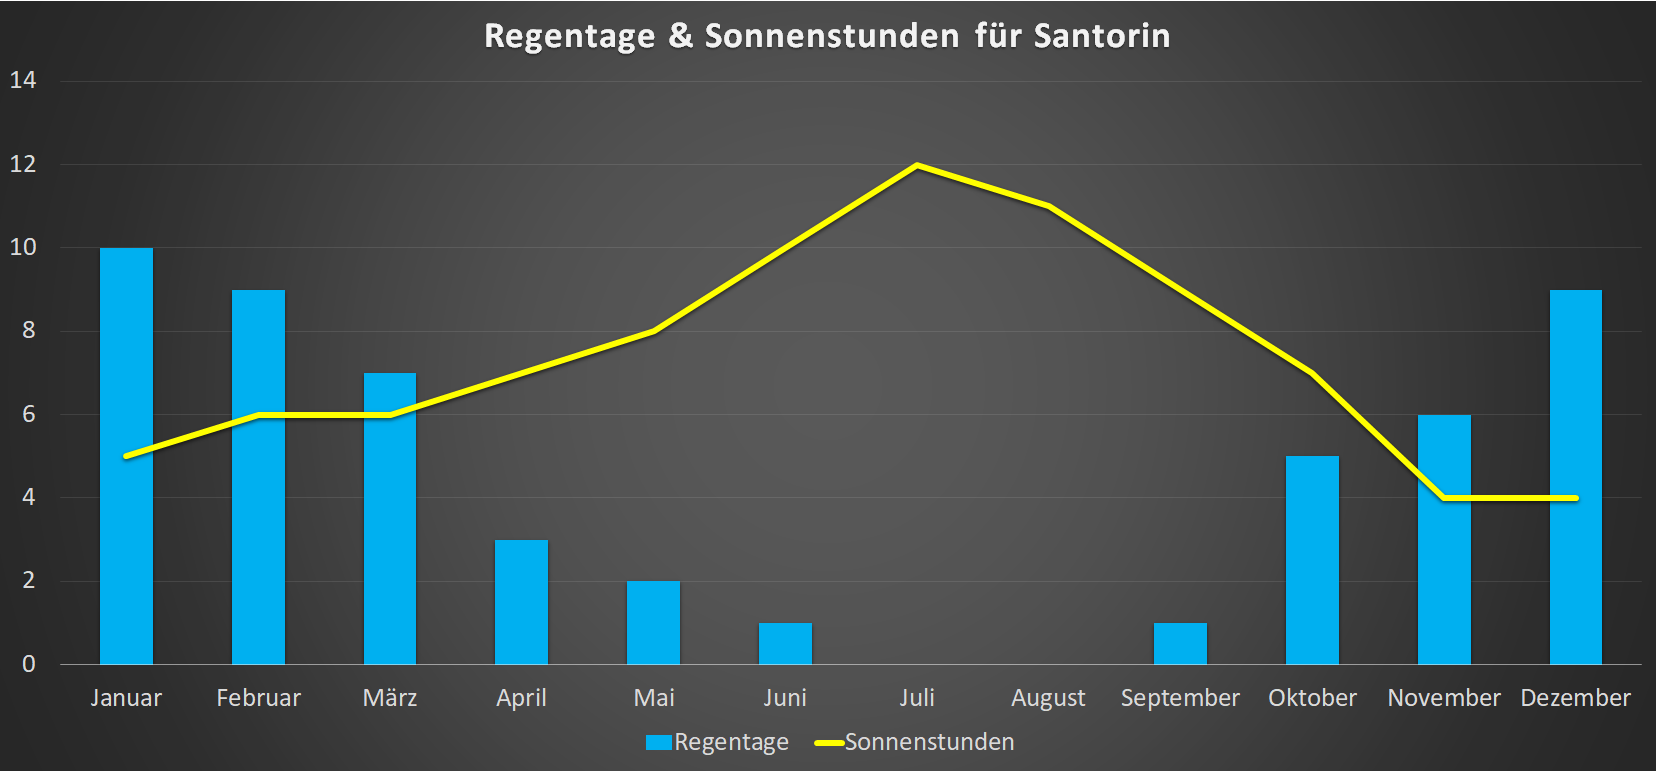 Regentage & Sonnenstunden für Santorin im Jahresverlauf